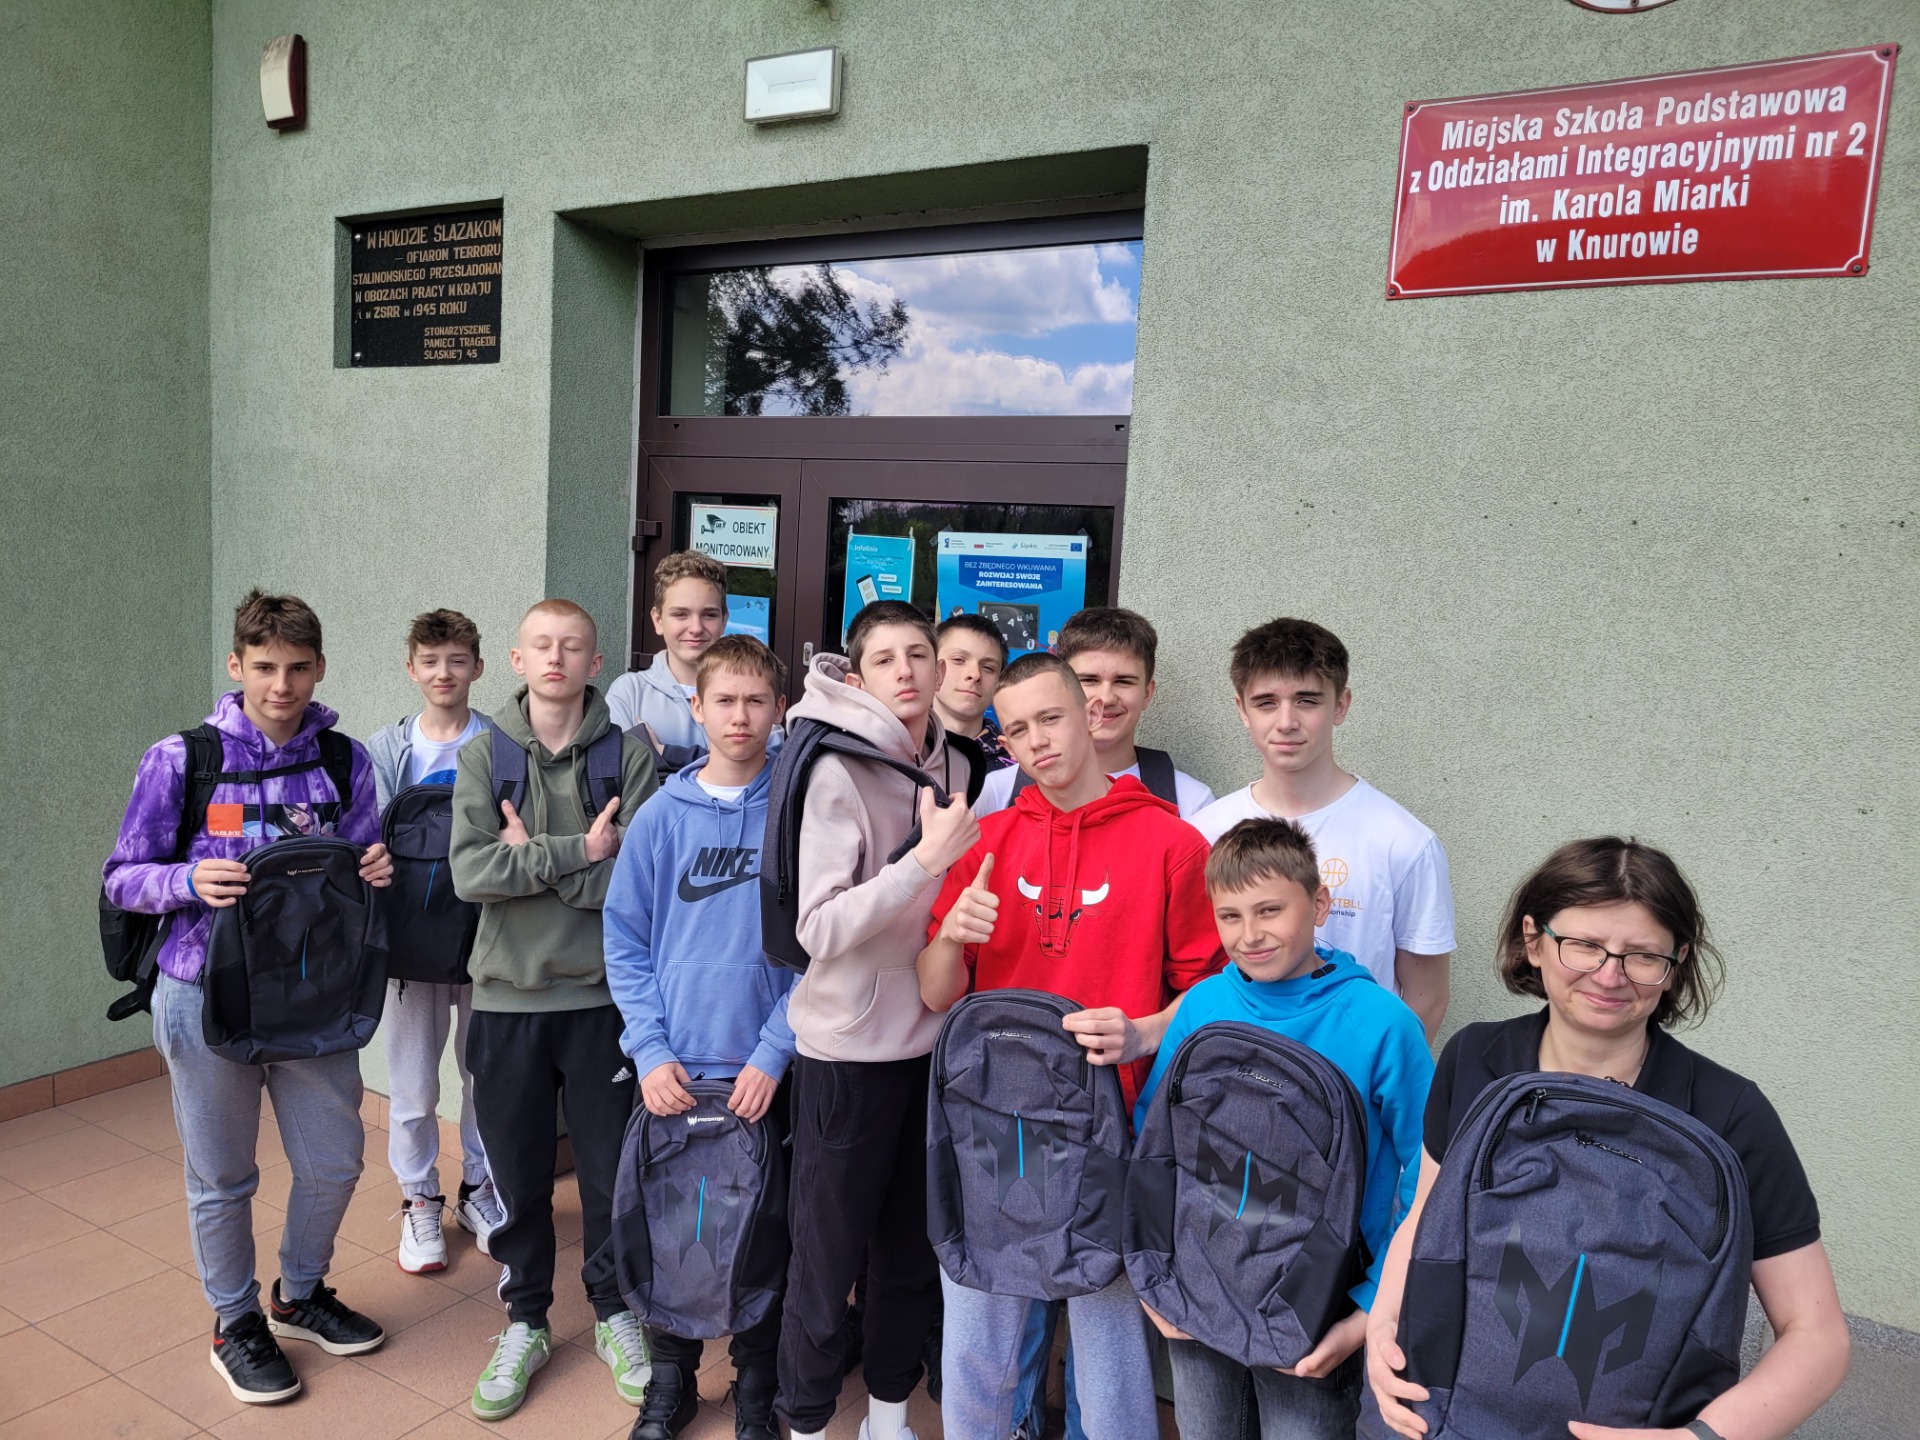 Grupa 10 uczniów wraz z nauczycielką trzymając plecaki uśmiechają się do zdjęcia przed budynkiem szkoły.